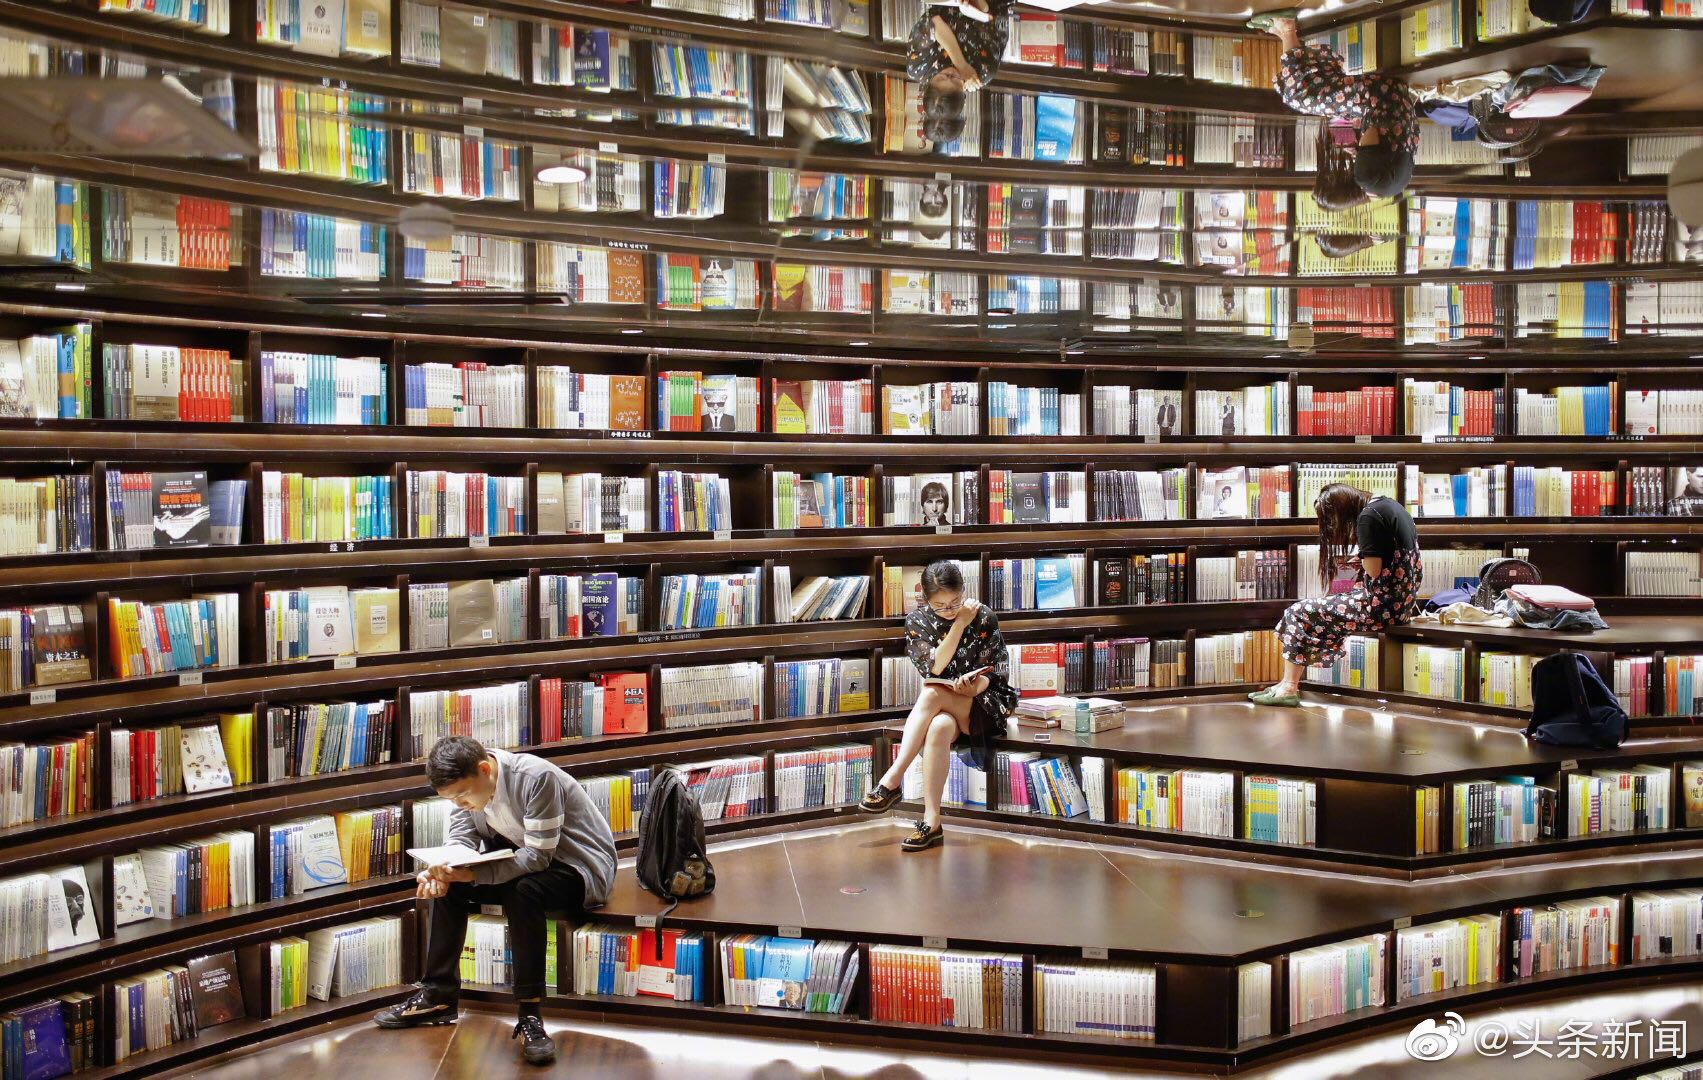 Best world books. Лавки с авторскими книгами. World book. World book Day. Zhongshuge bookstore, Ханчжоу, Китай люди.